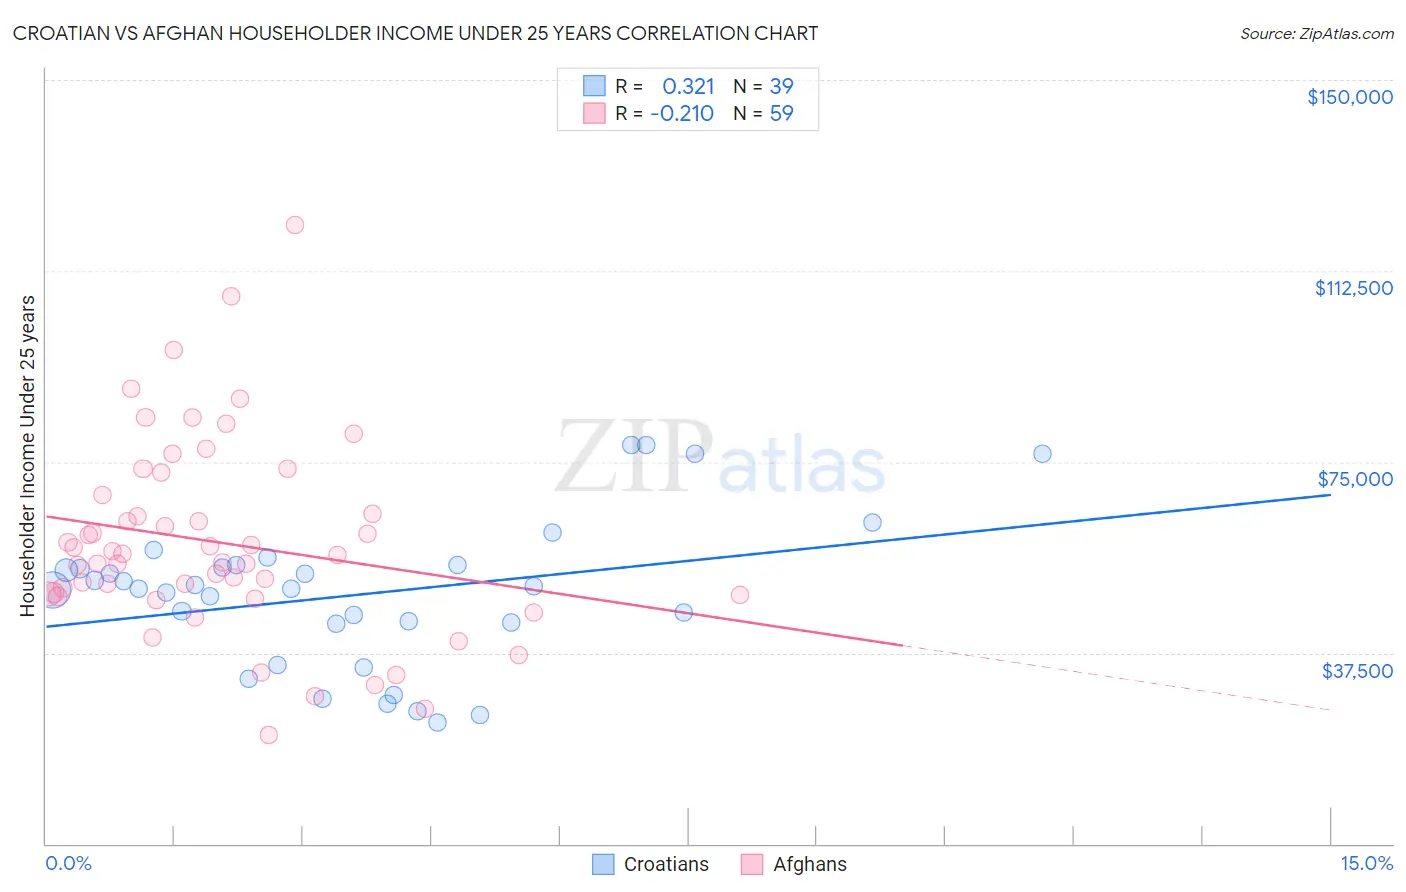 Croatian vs Afghan Householder Income Under 25 years